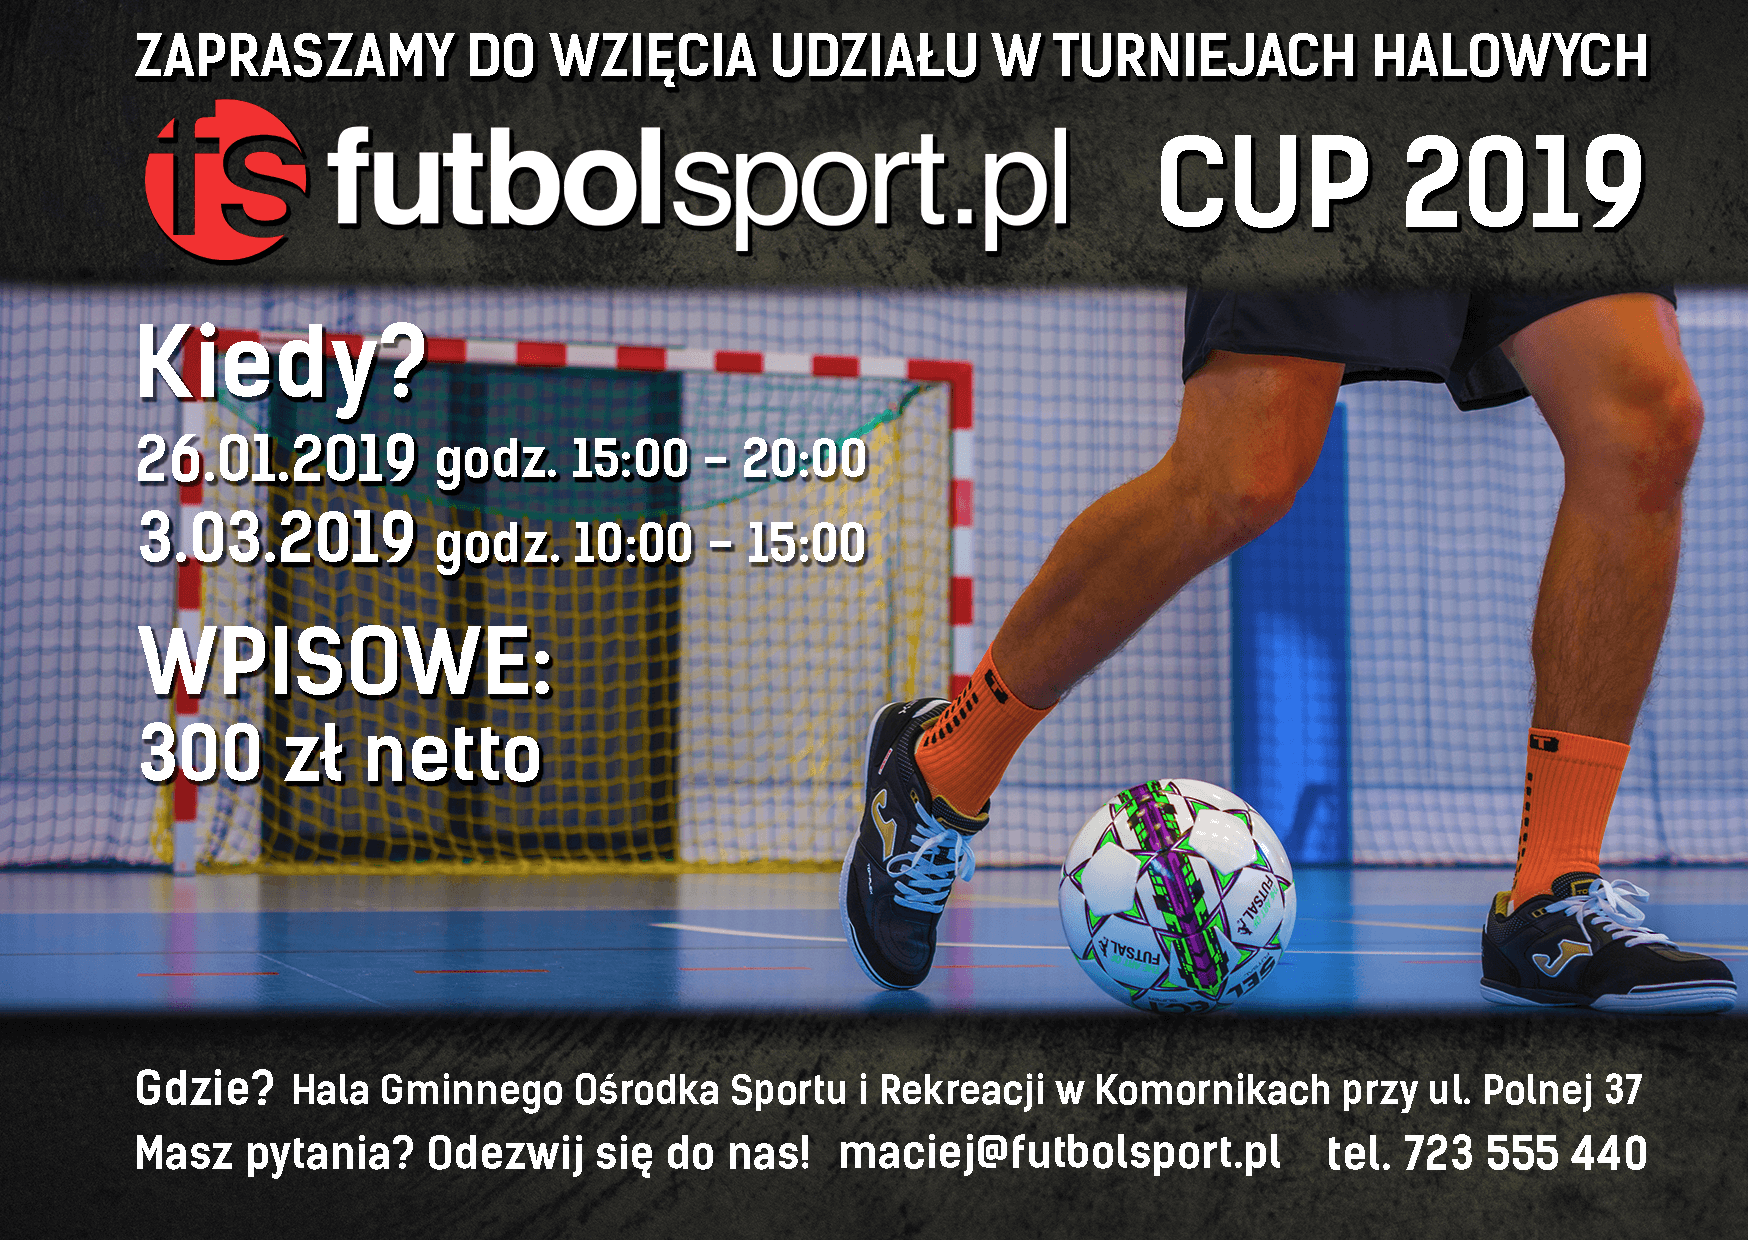 Trwają zapisy na Turnieje Halowe futbolsport.pl